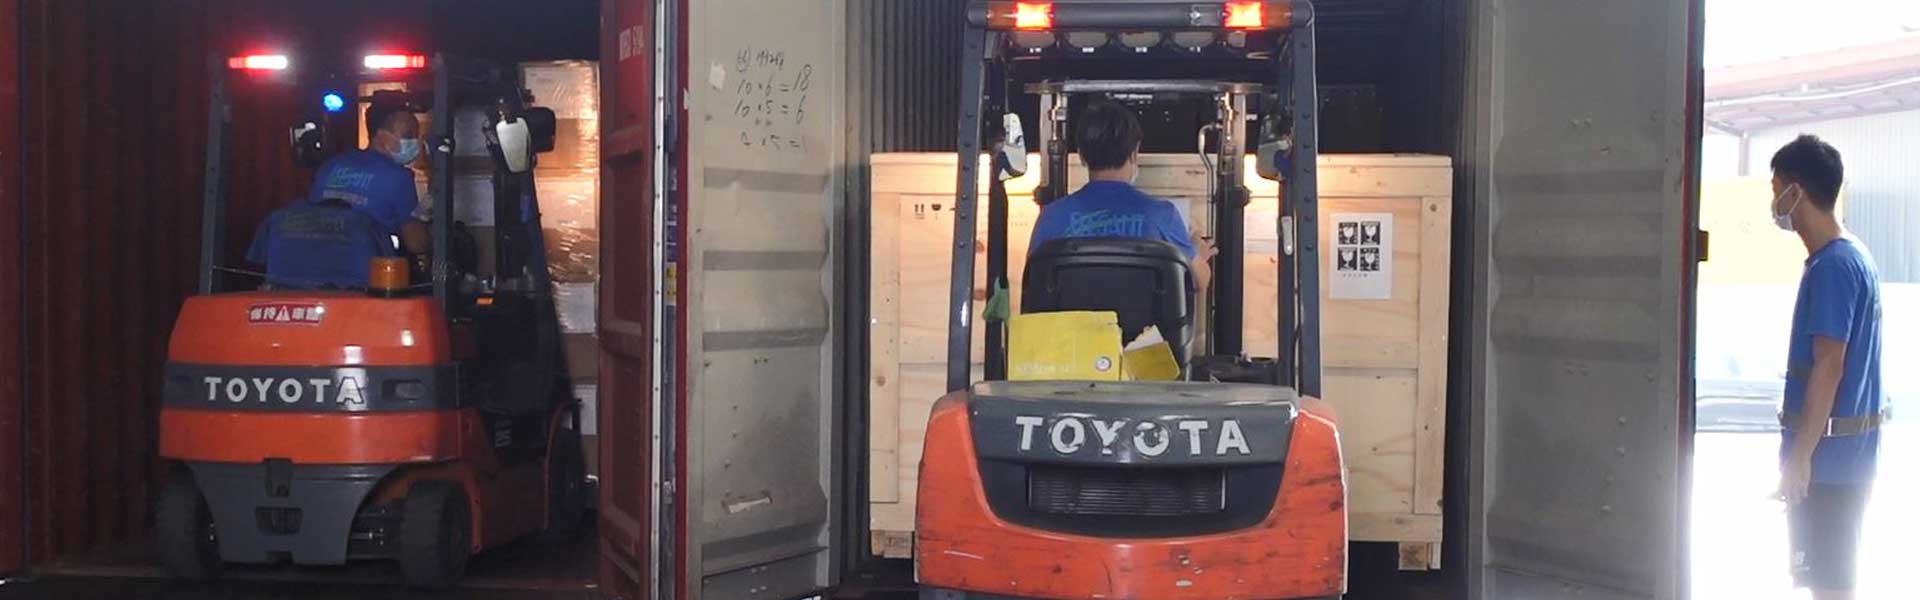 海航物流集团之 仓库 提供最专业的装卸服务，如机器、大型木箱、特别尺寸及重量之货物装卸到车、货柜或仓库存放